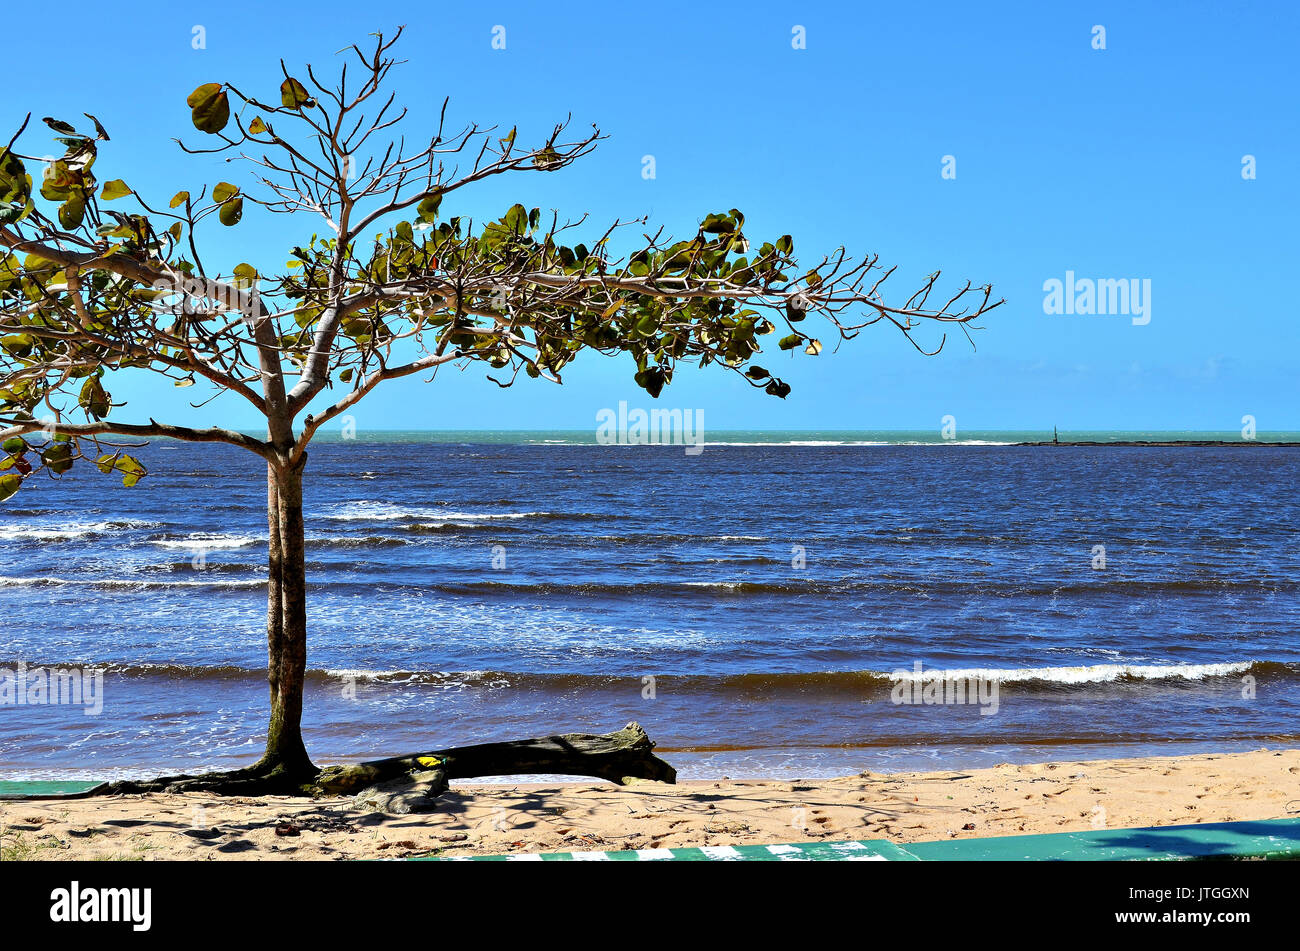 Schöne mandelbaum am Meer mit einem bunten Meer im Hintergrund. Korallenriffe schützen die Hafeneinfahrt der Stadt Porto Seguro. Stockfoto